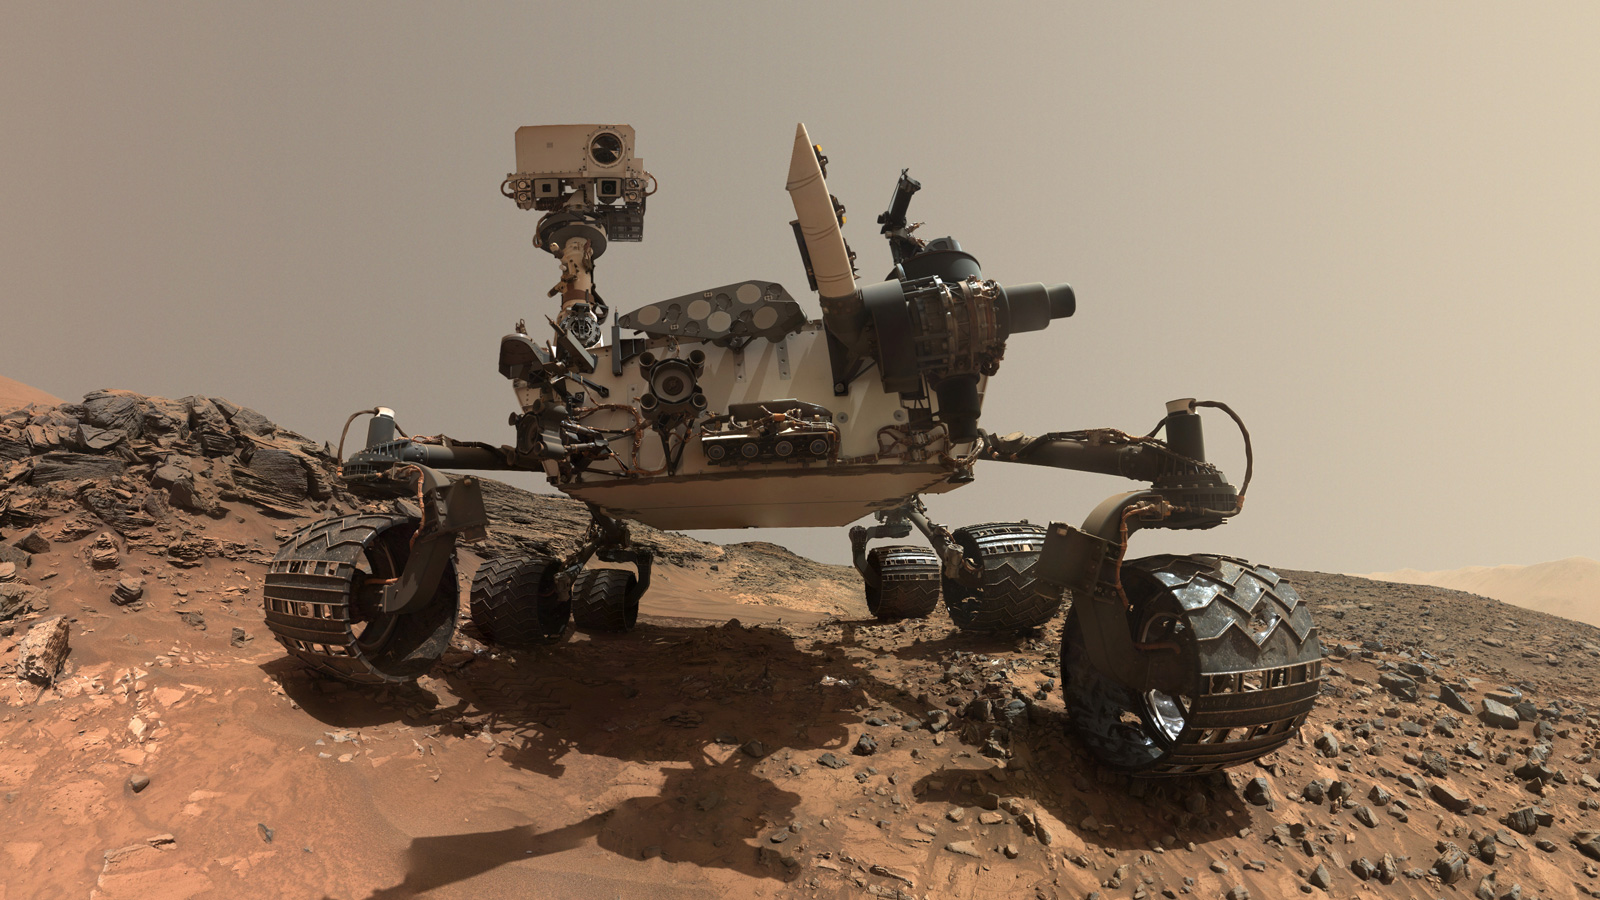 Le rover Curiosity 